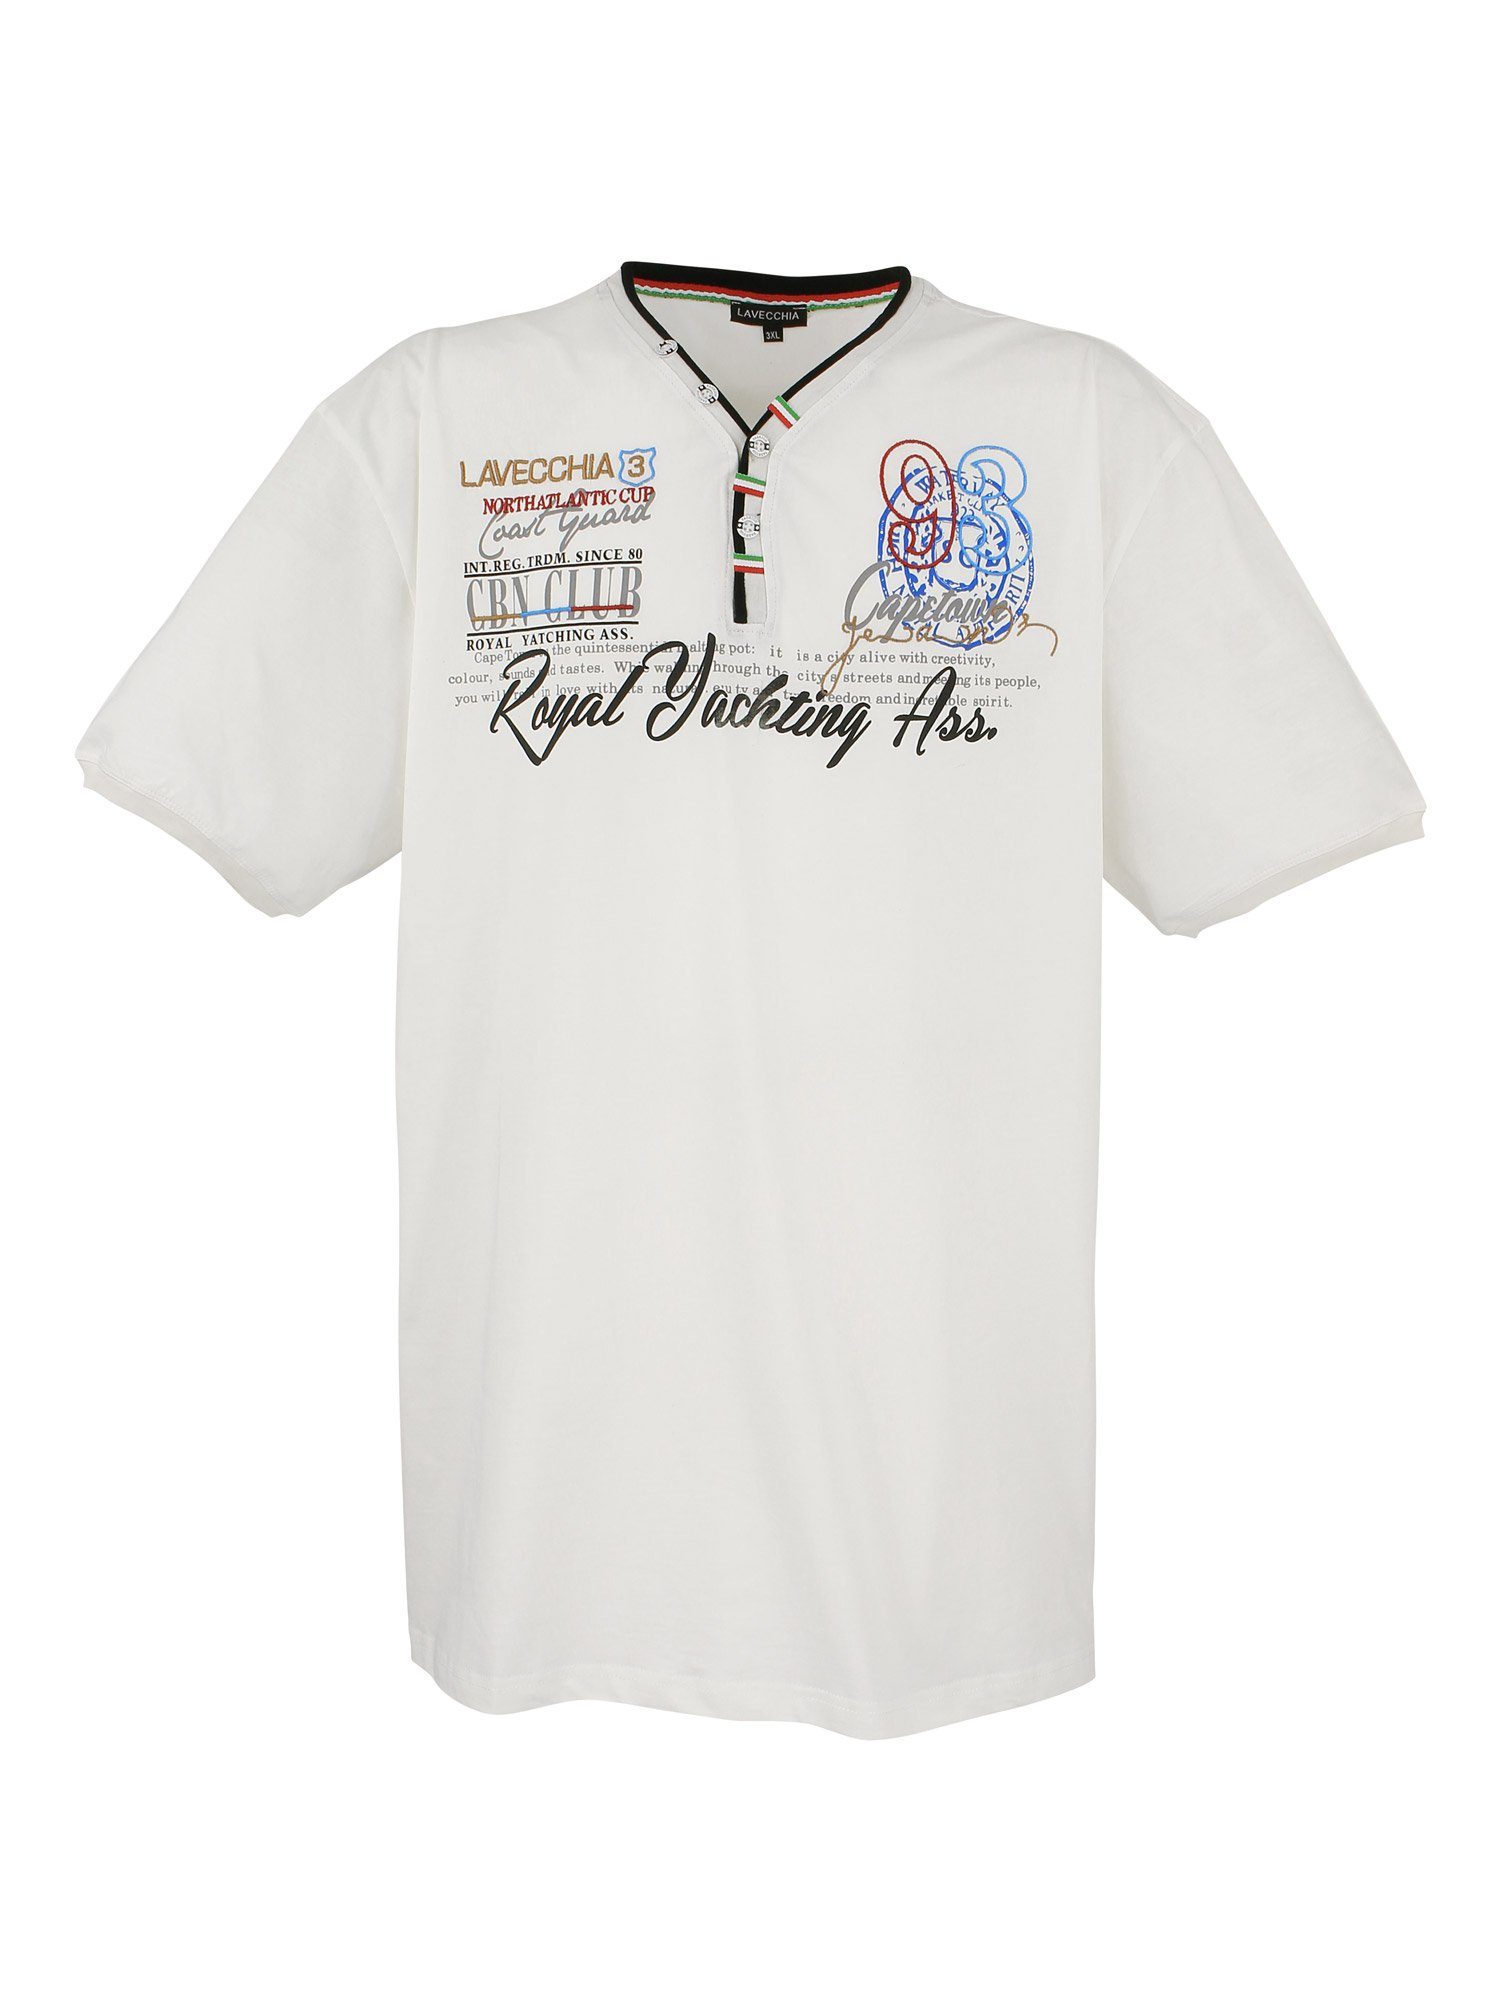 Lavecchia T-Shirt Übergrößen Herren V-Shirt LV-608 Herrenshirt V-Ausschnitt creme/weiß